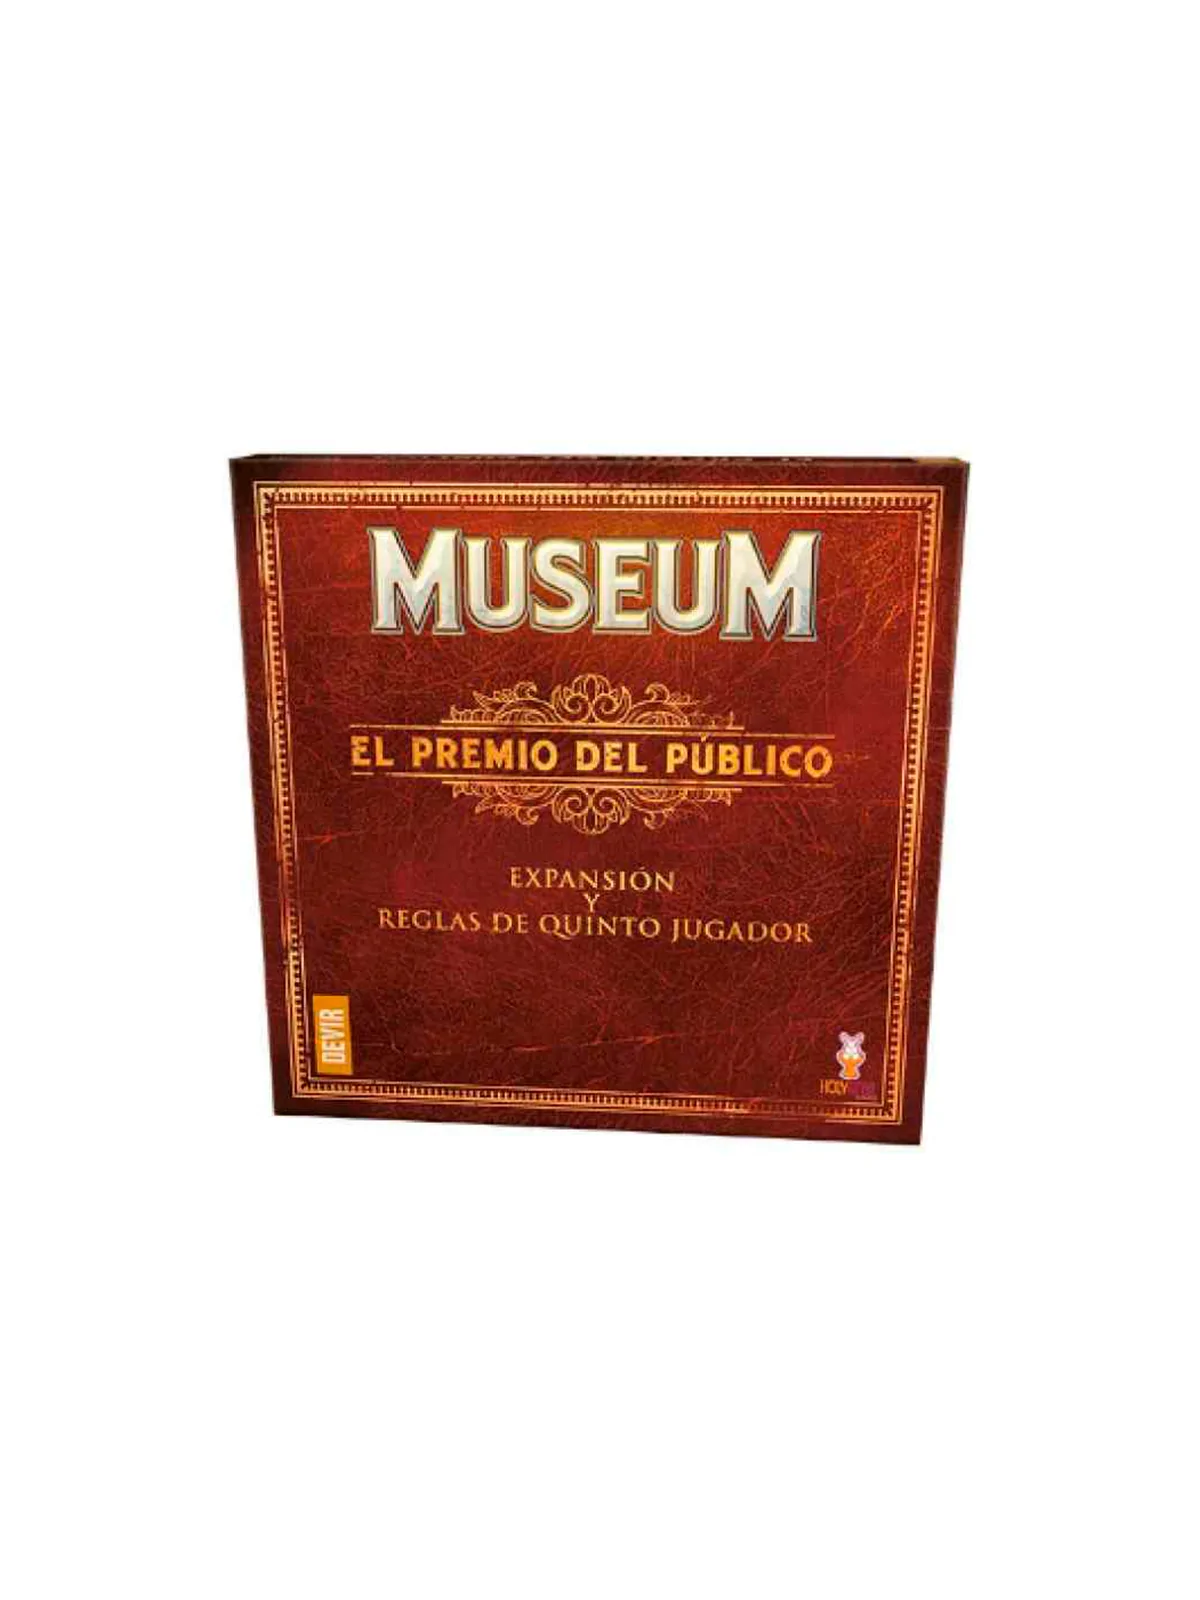 Comprar Museum: El Premio del Público barato al mejor precio 27,00 € d